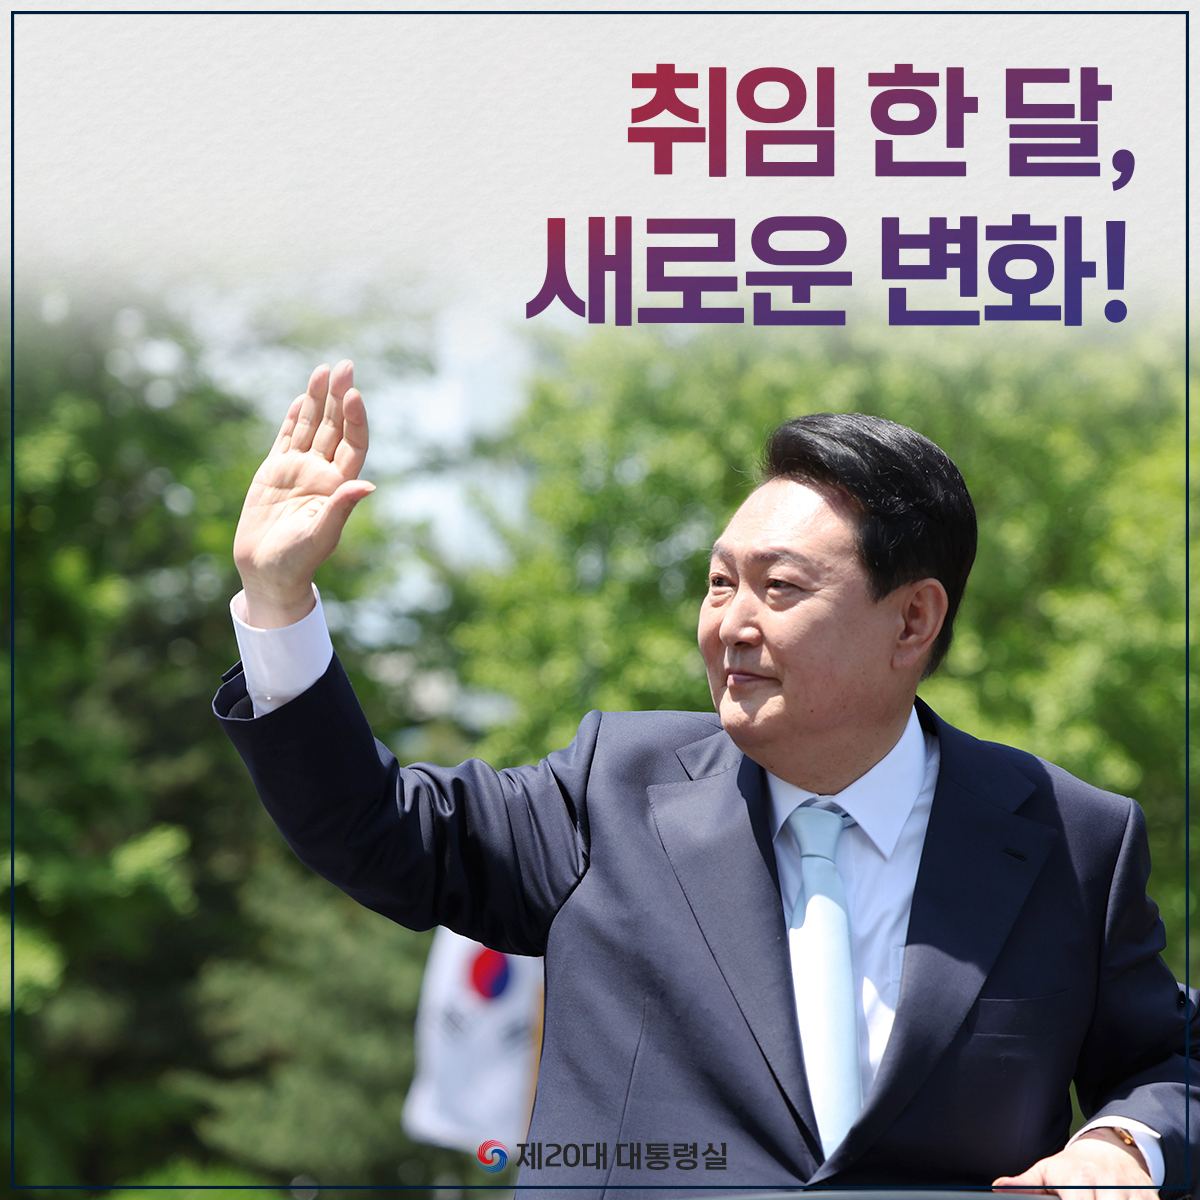 윤석열 대통령 취임 한 달, 새로운 변화!